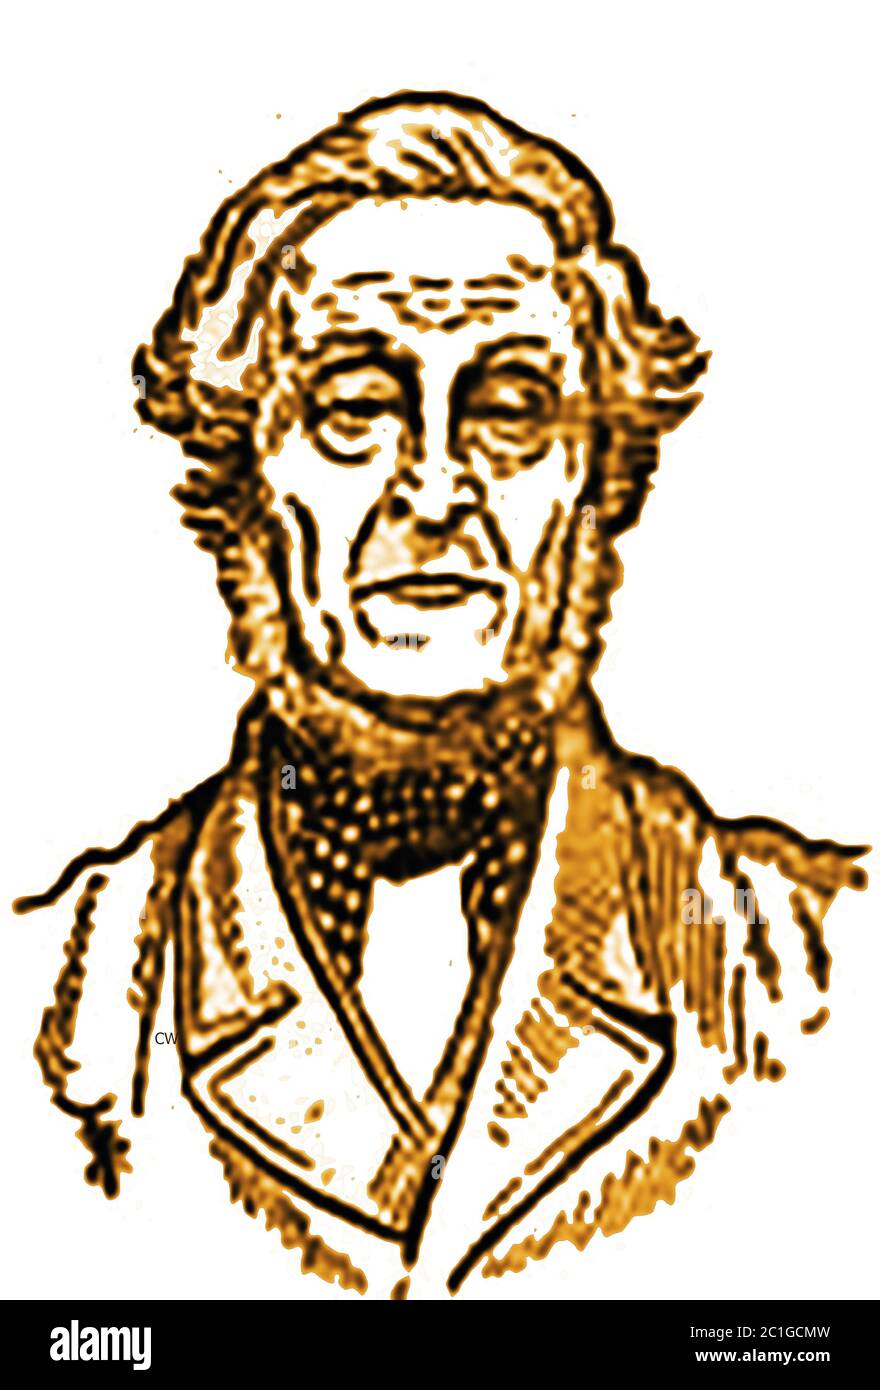 Ein seltenes Porträt des Kutschers Thomas Layfield vom King's Arms Inn, Leeds, UK (geboren 1800. Januar, gestorben 1881). Er fuhr den Chevy Chaise für den Herzog von Northumberland und die meisten Trainer im Norden Englands. Er hatte das Privileg, der letzte Kutscher auf der Straße zu sein, fuhr den "Wellington" und zog einen angesehenen und wohlhabenden Mann in den Ruhestand. Stockfoto